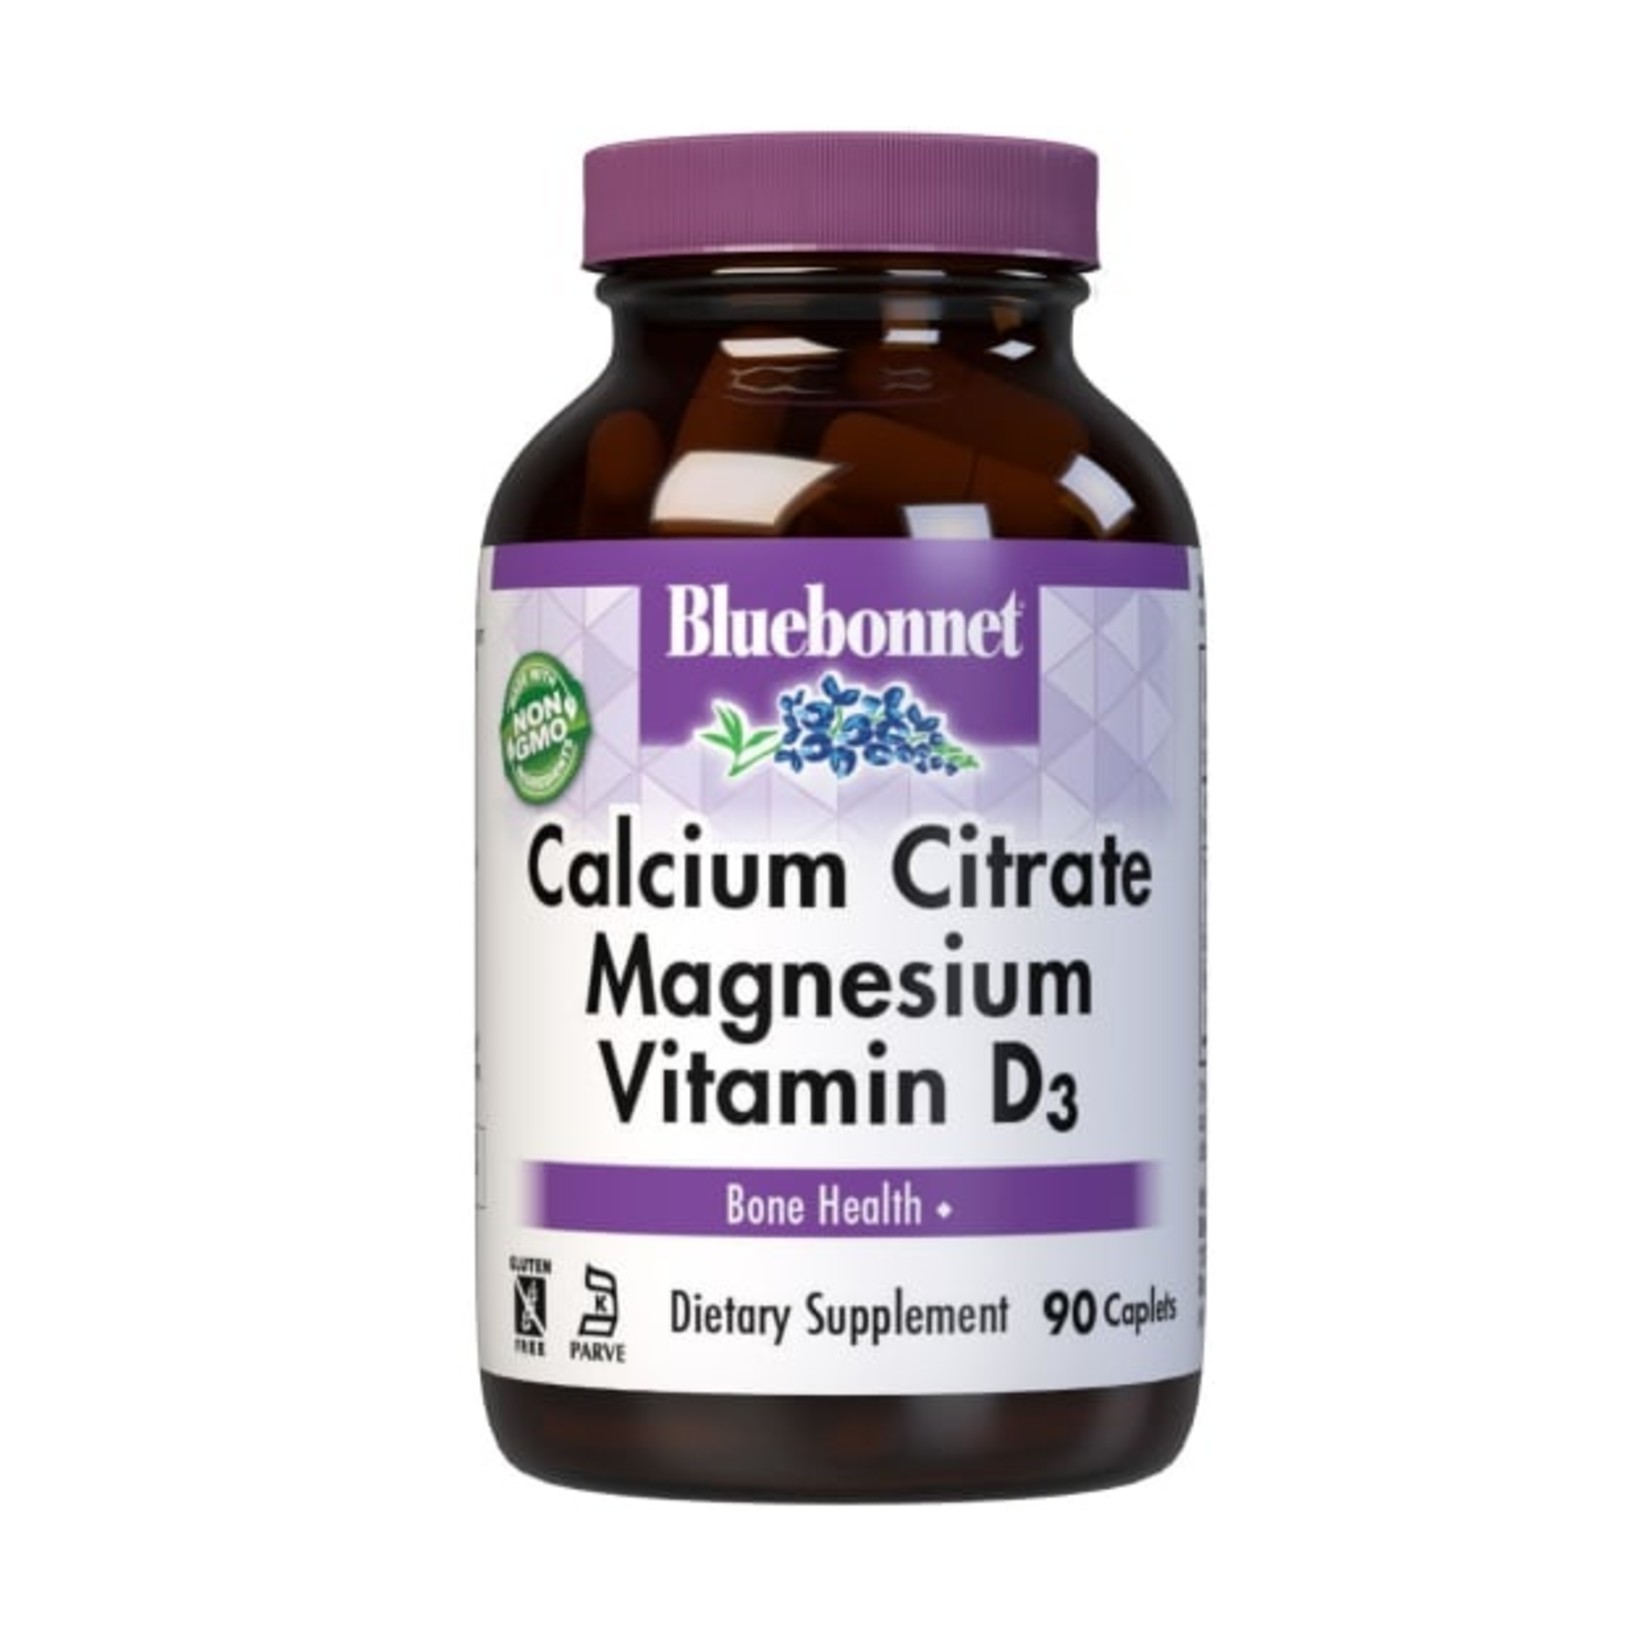 Bluebonnet Bluebonnet - Calcium Citrate Plus Vitamin D3 - 90 Capsules